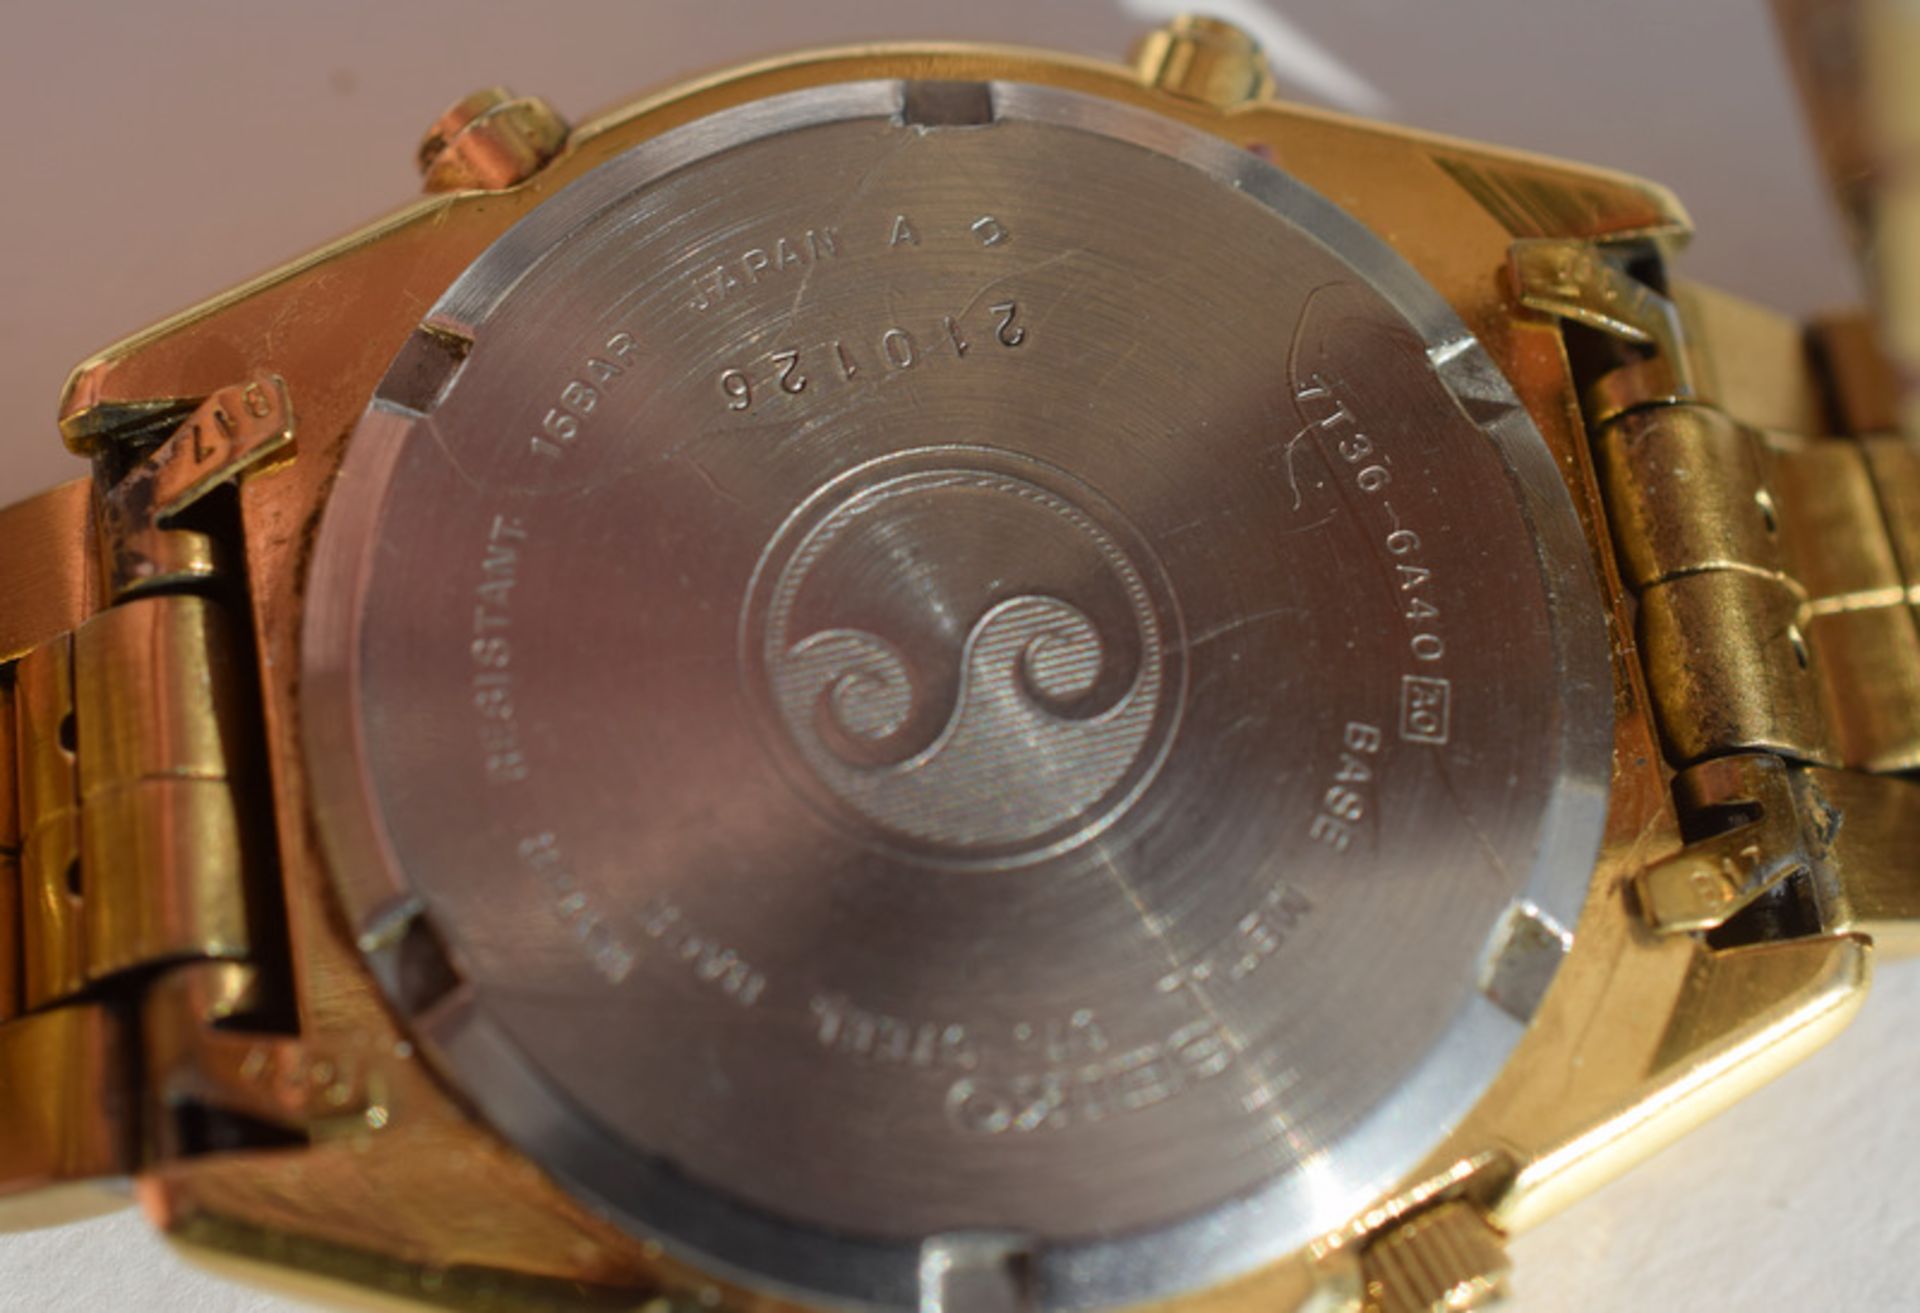 Seiko Chronograph Gold Plated Quartz 7T36-6A40 - Image 3 of 4